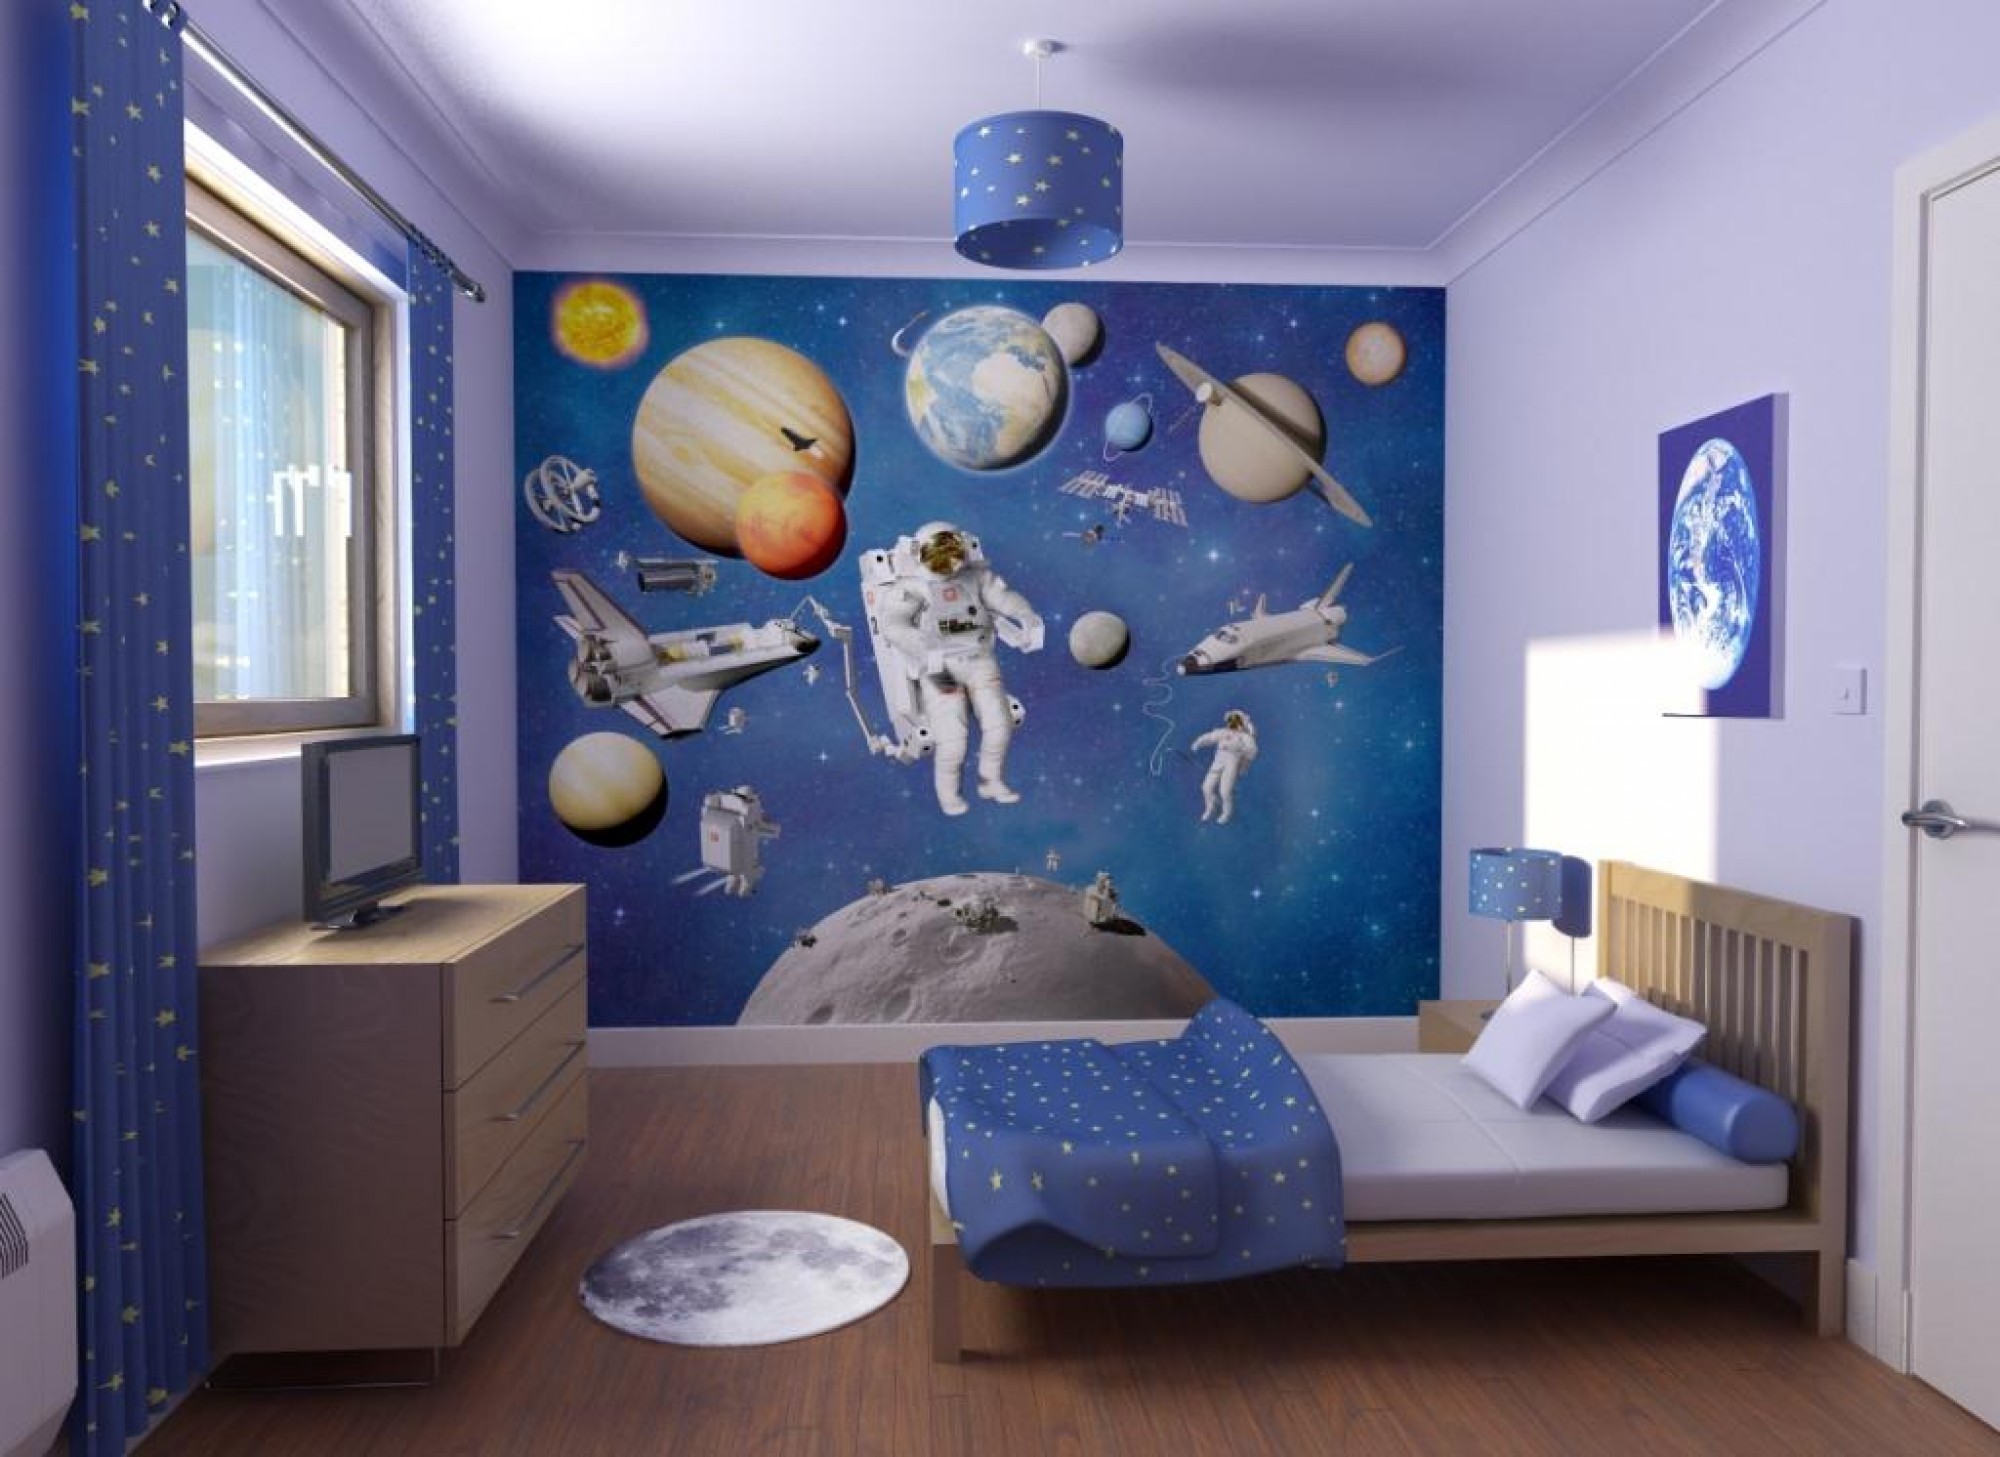 Выбор обоев для детской комнаты: варианты под стиль интерьера помещения